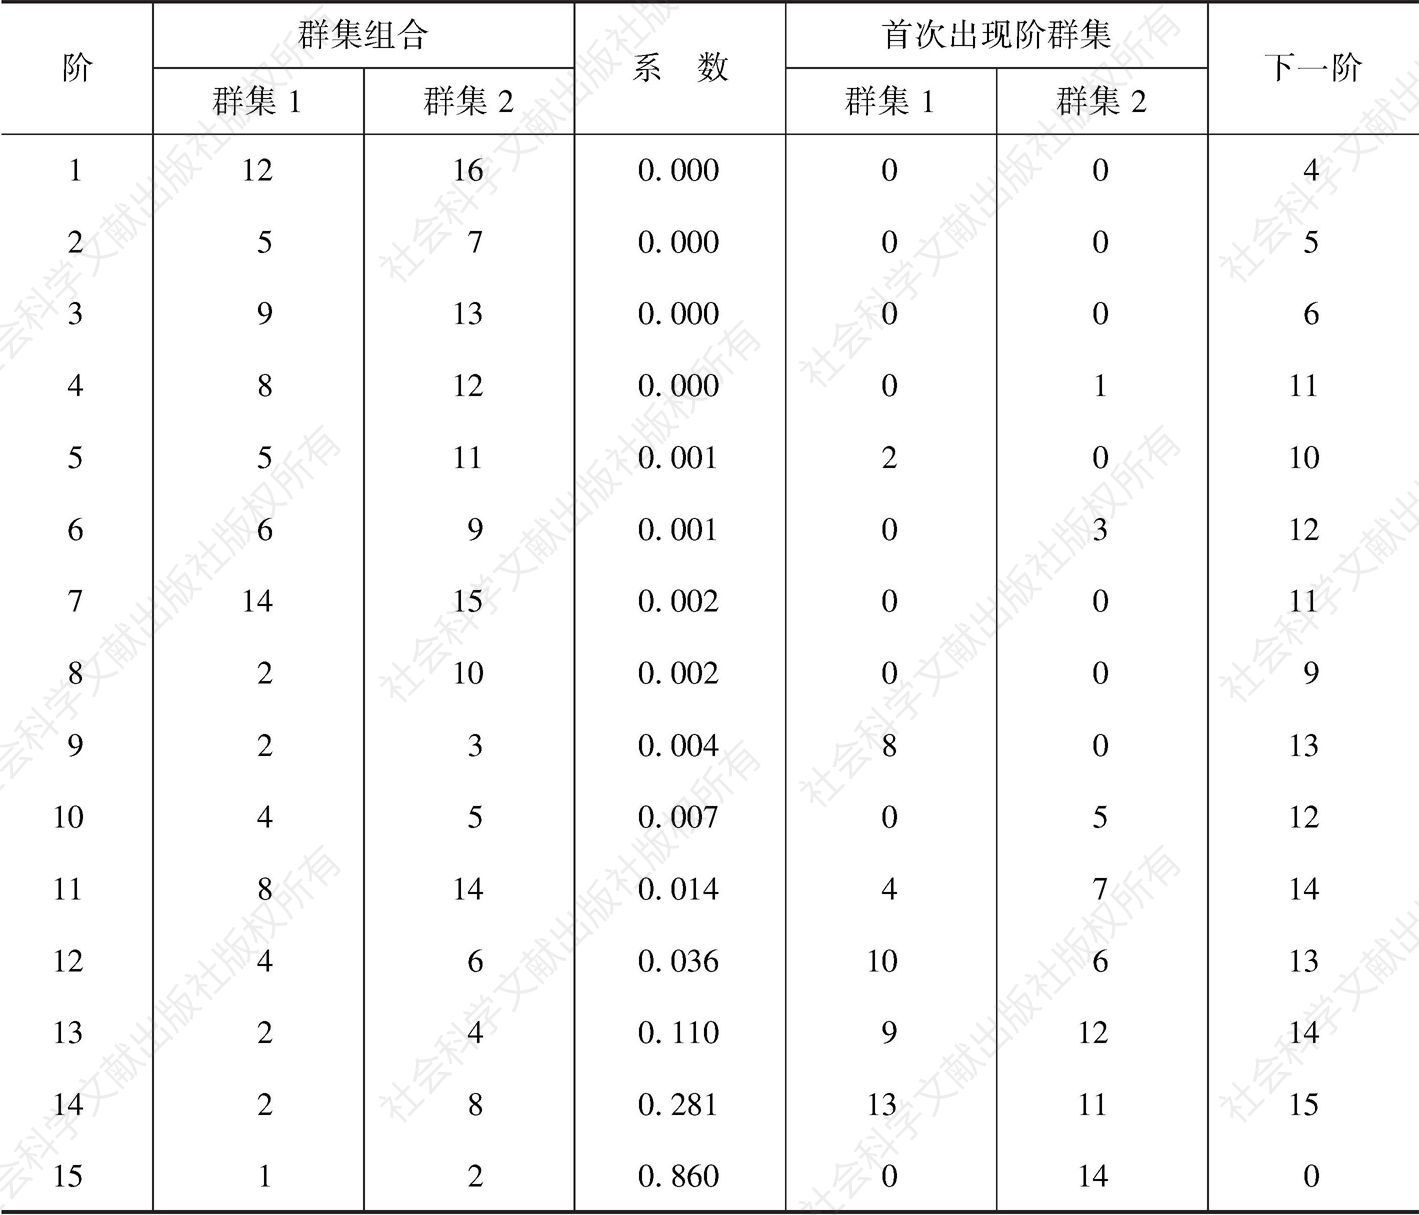 表2-17 云南省各州市交通干线影响度分类凝聚